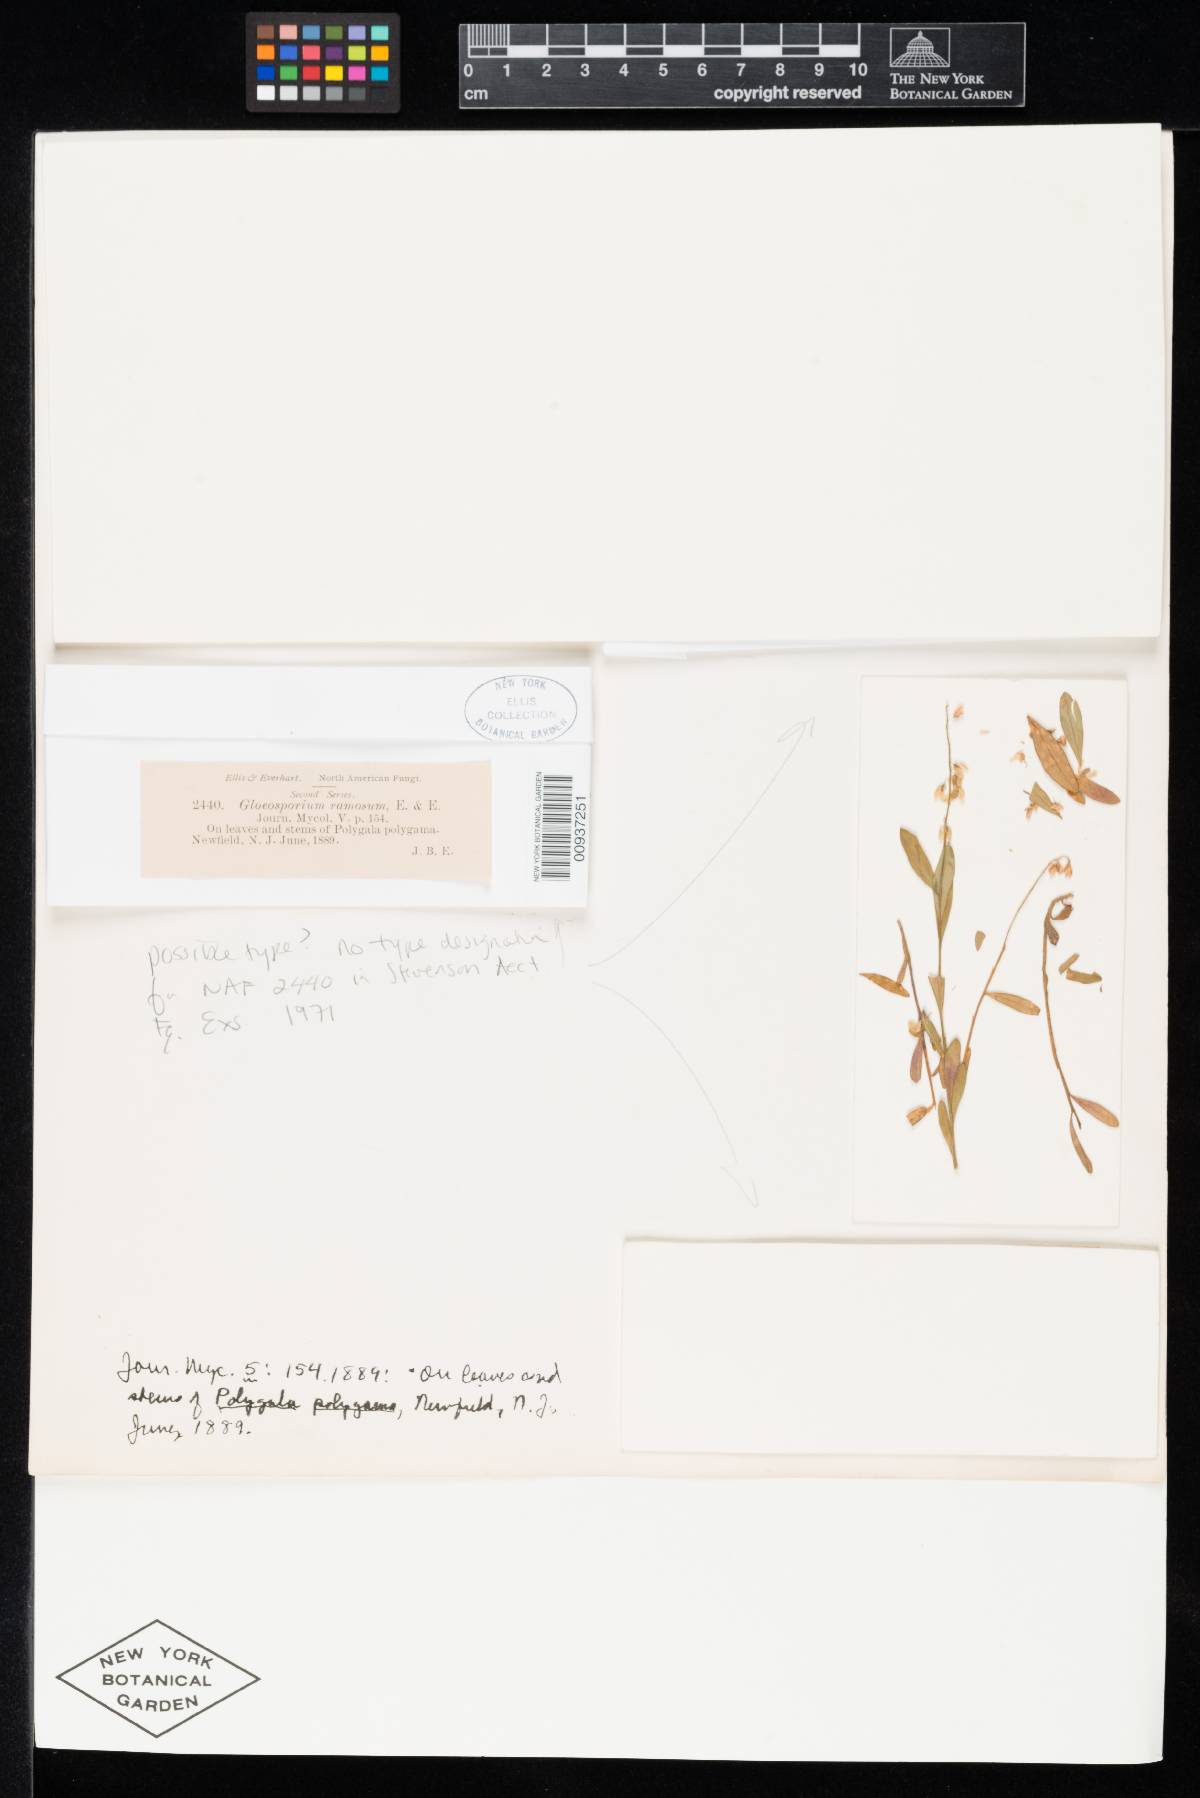 Gloeosporium ramosum image